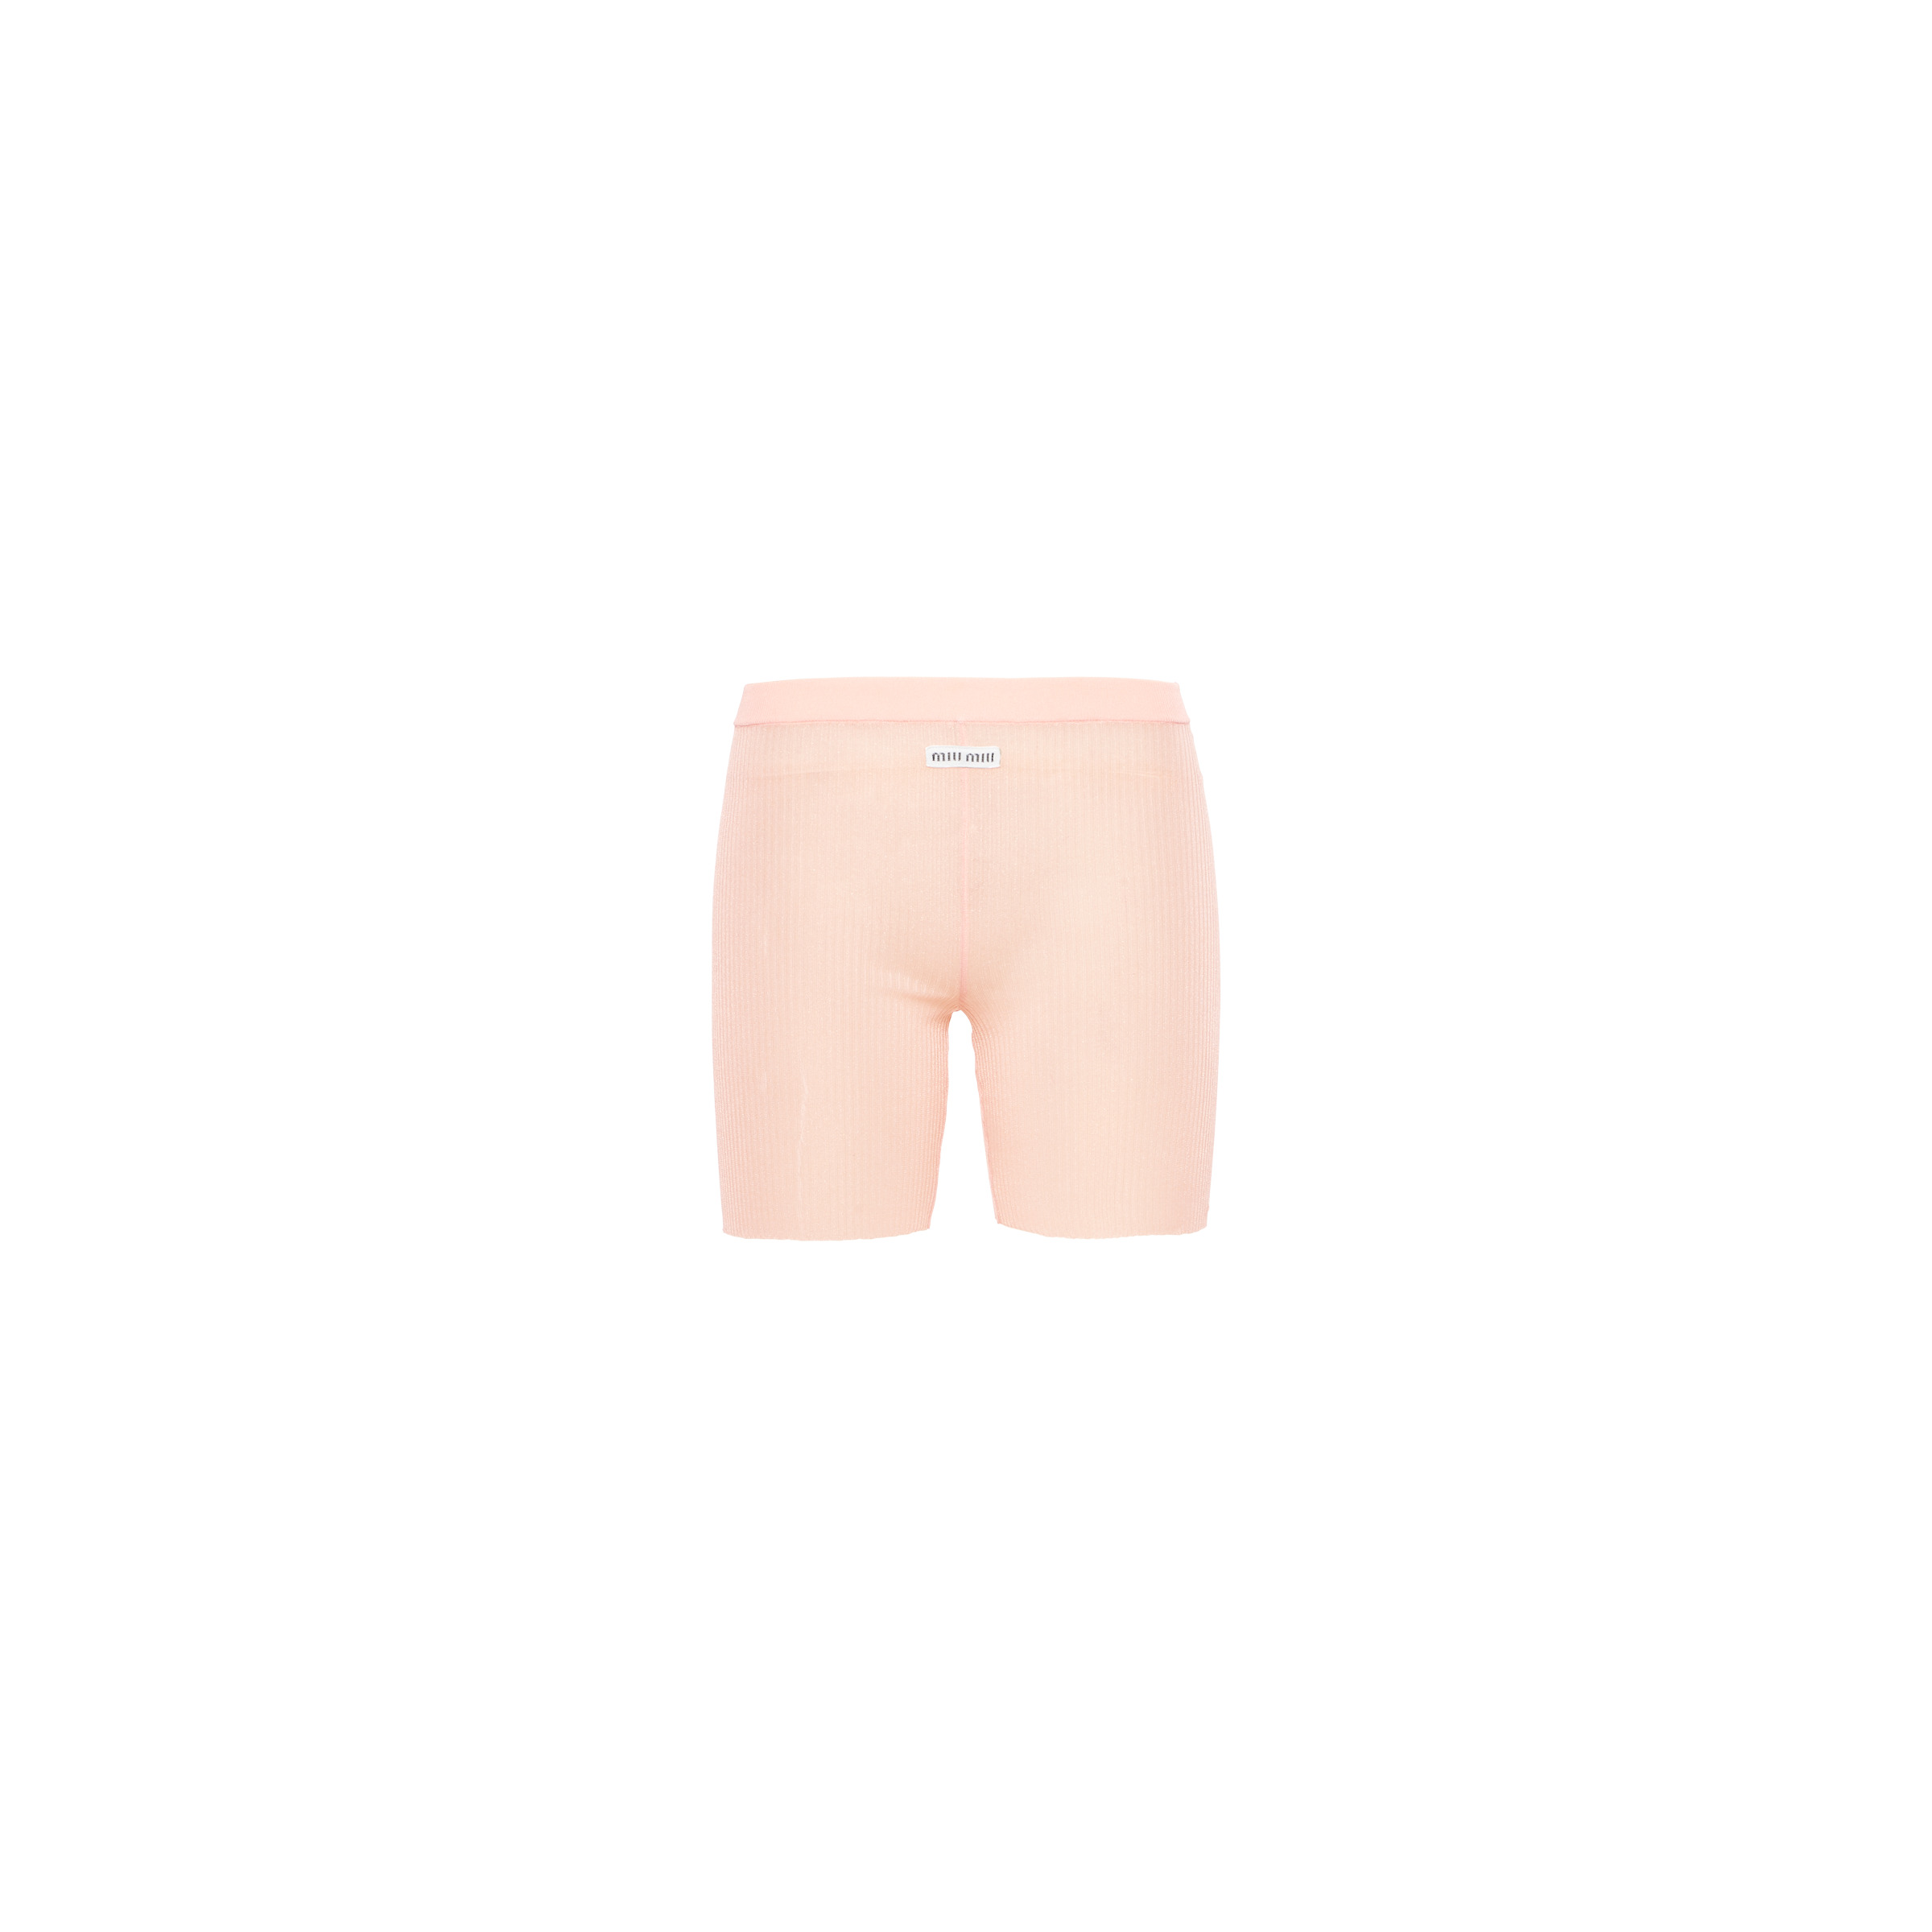 Nylon shorts - 1